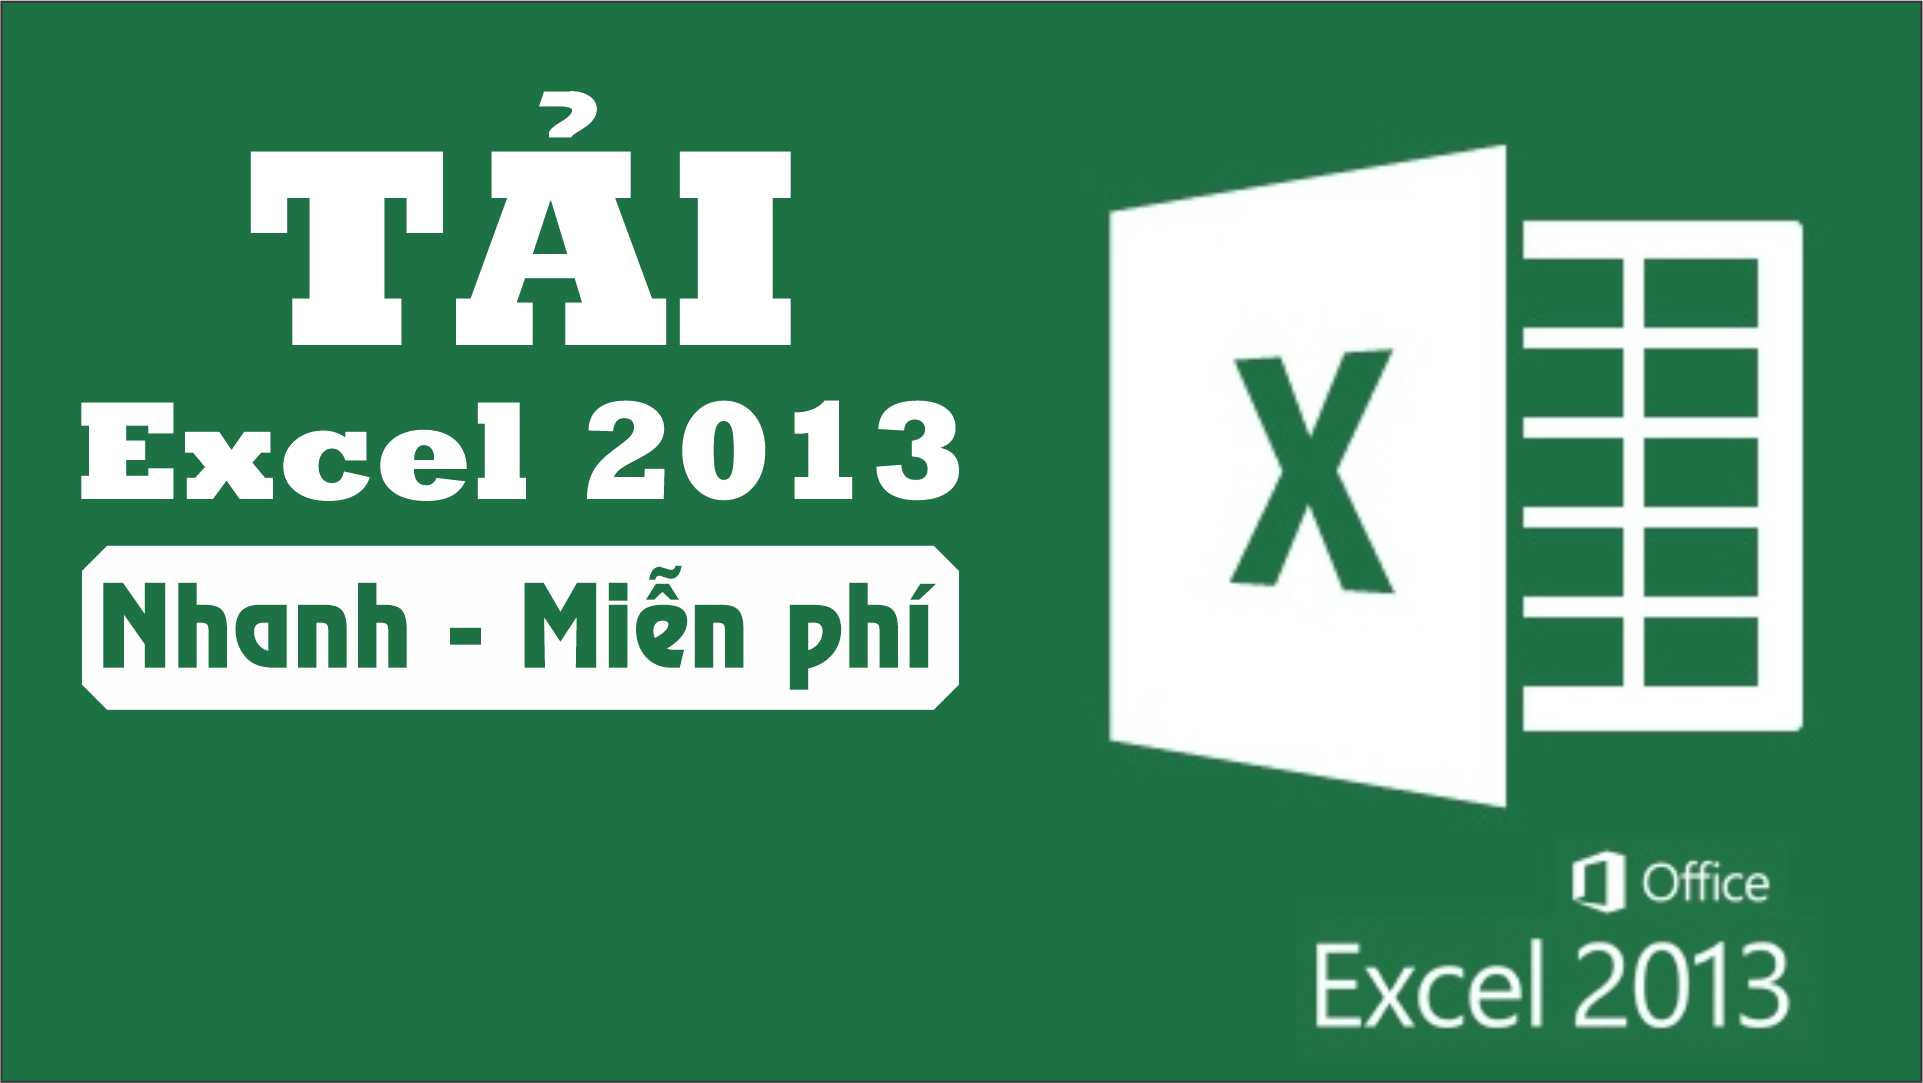 Cách Tải Excel 2013 Miễn phí, Đơn giản【Cho mọi người】